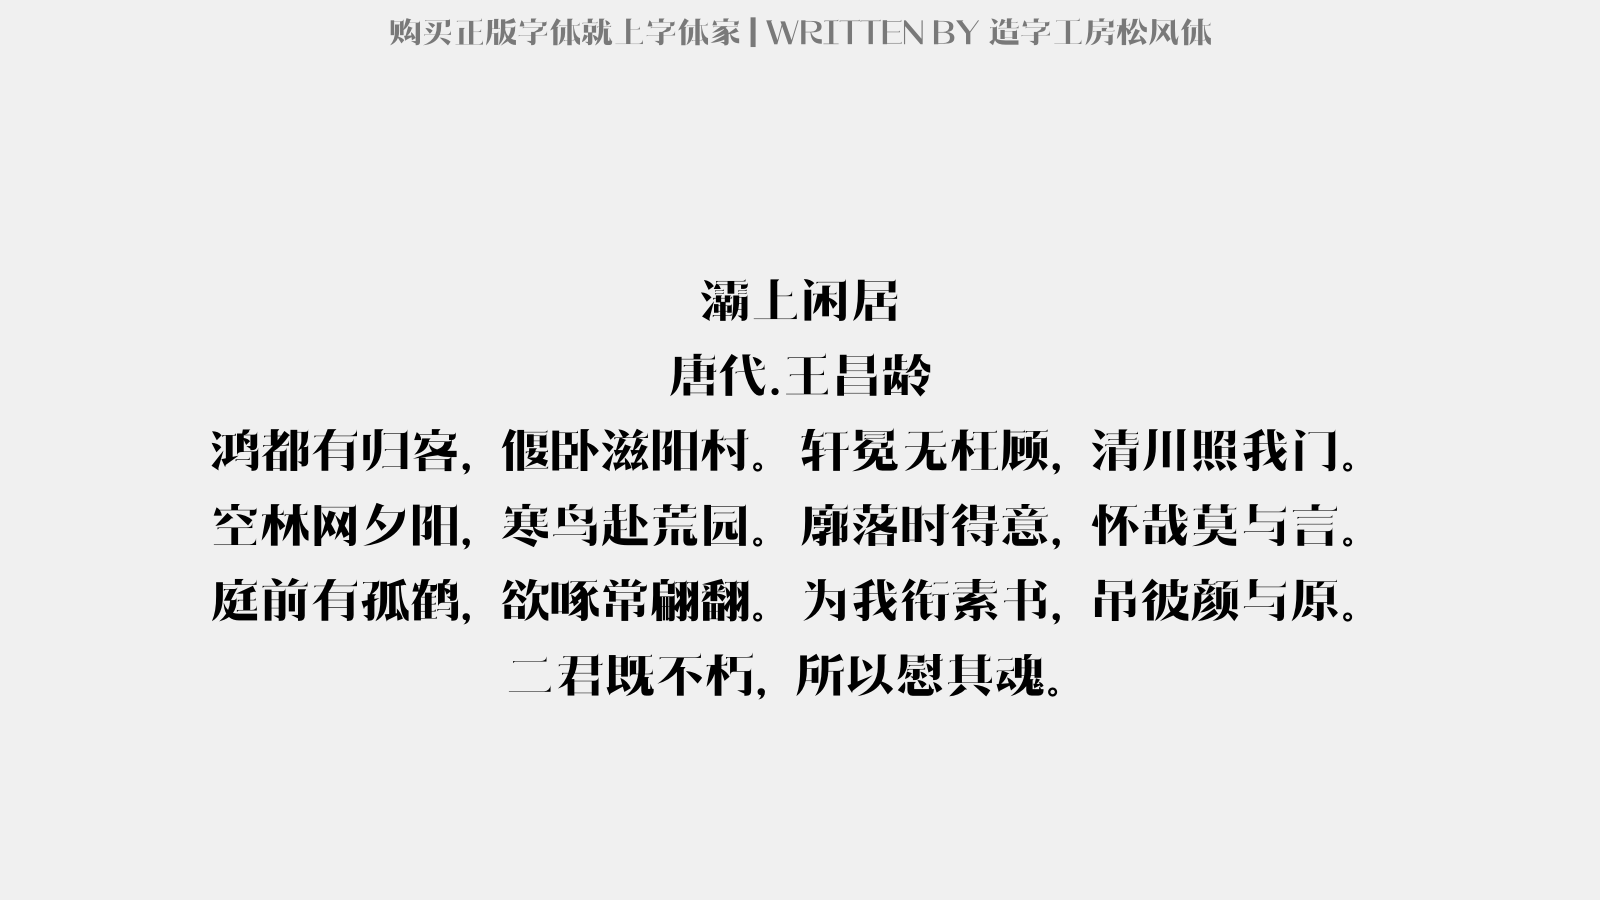 造字工房松风体免费字体下载 中文字体免费下载尽在字体家